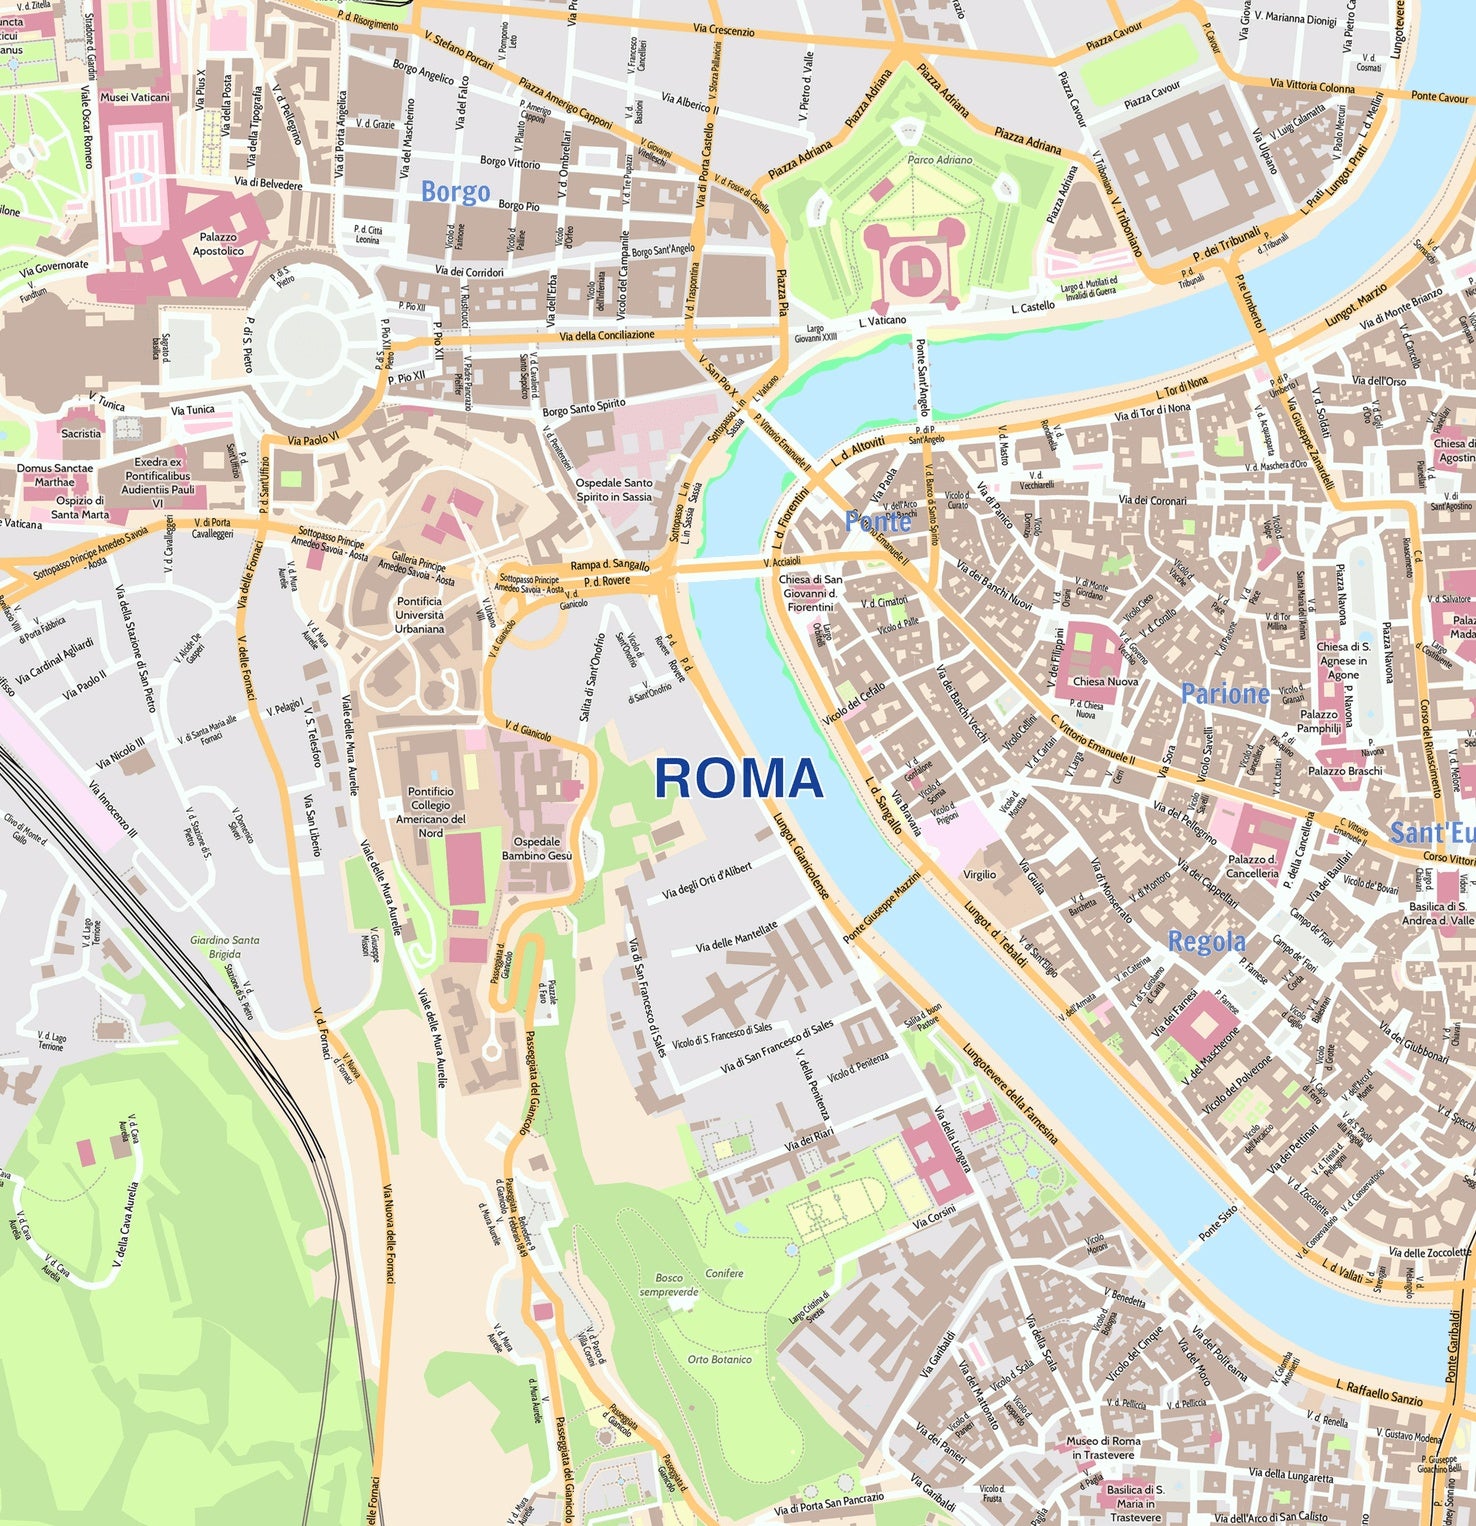 Roma City Map - Laminated Wall Map of Rome, Italy